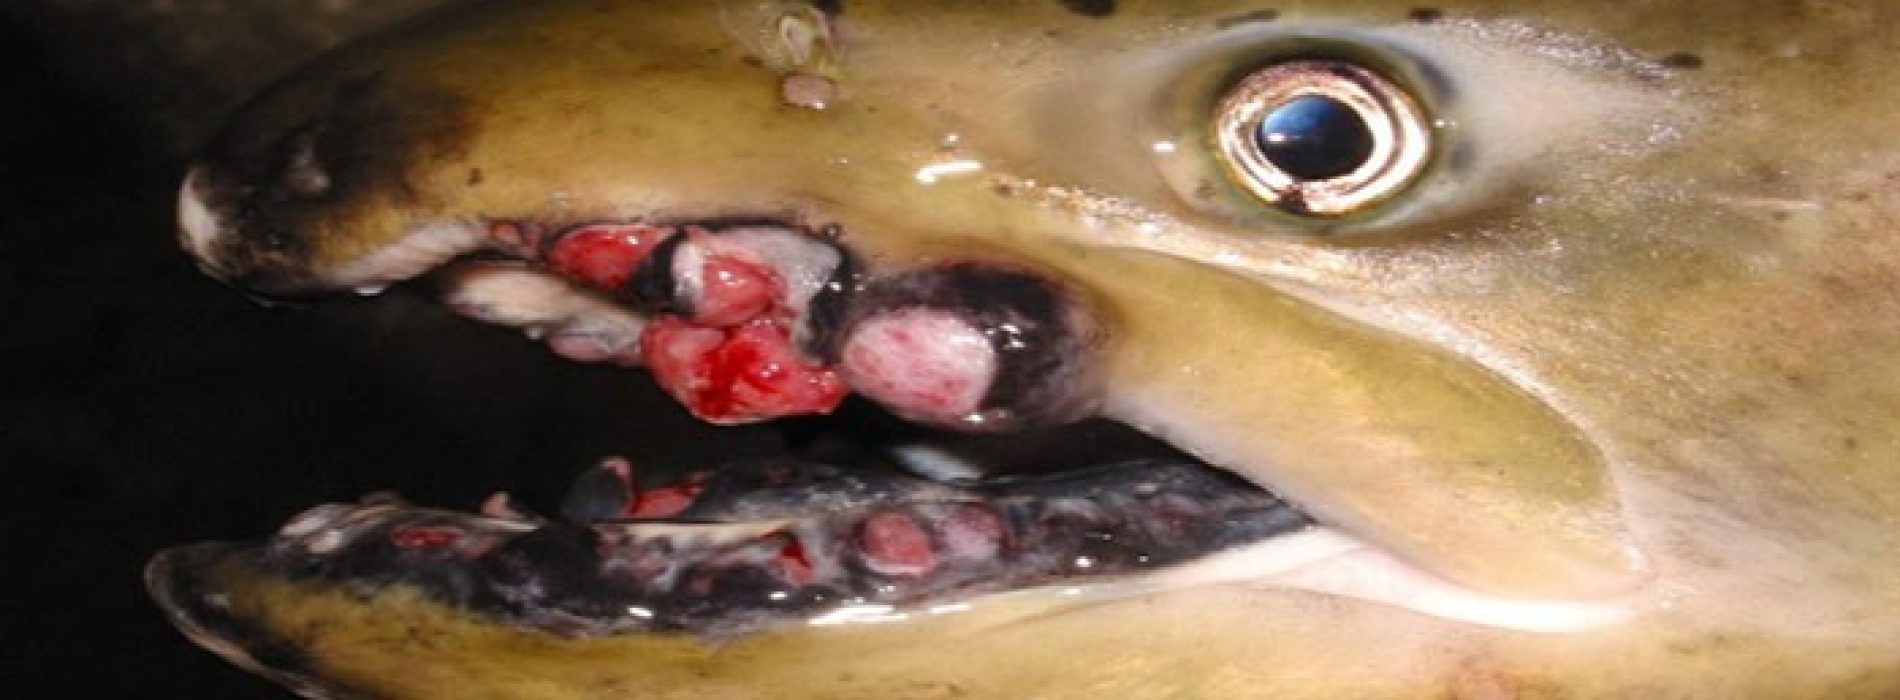 Sterke toename tumoren bij zeedieren in Stille Oceaan | VS en media negeren radioactiviteit van Fukushima